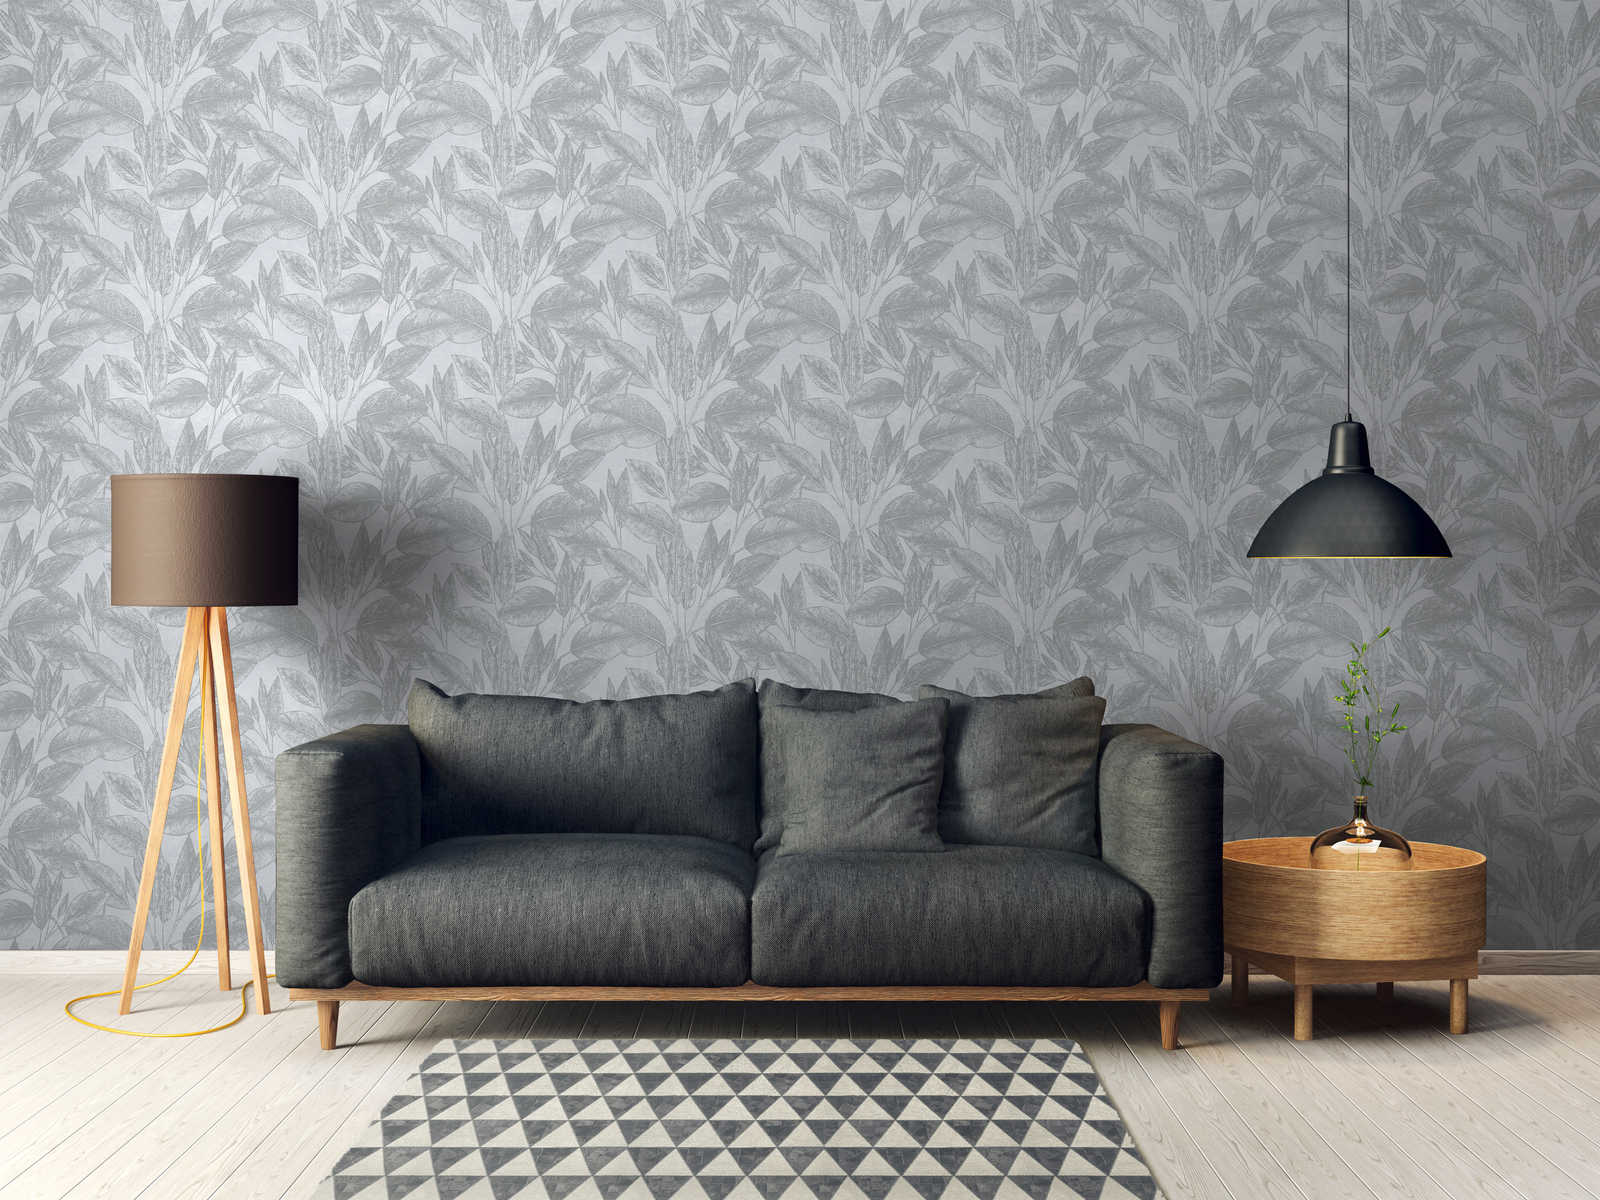             Vintage look leaf pattern wallpaper - grey, metallic
        